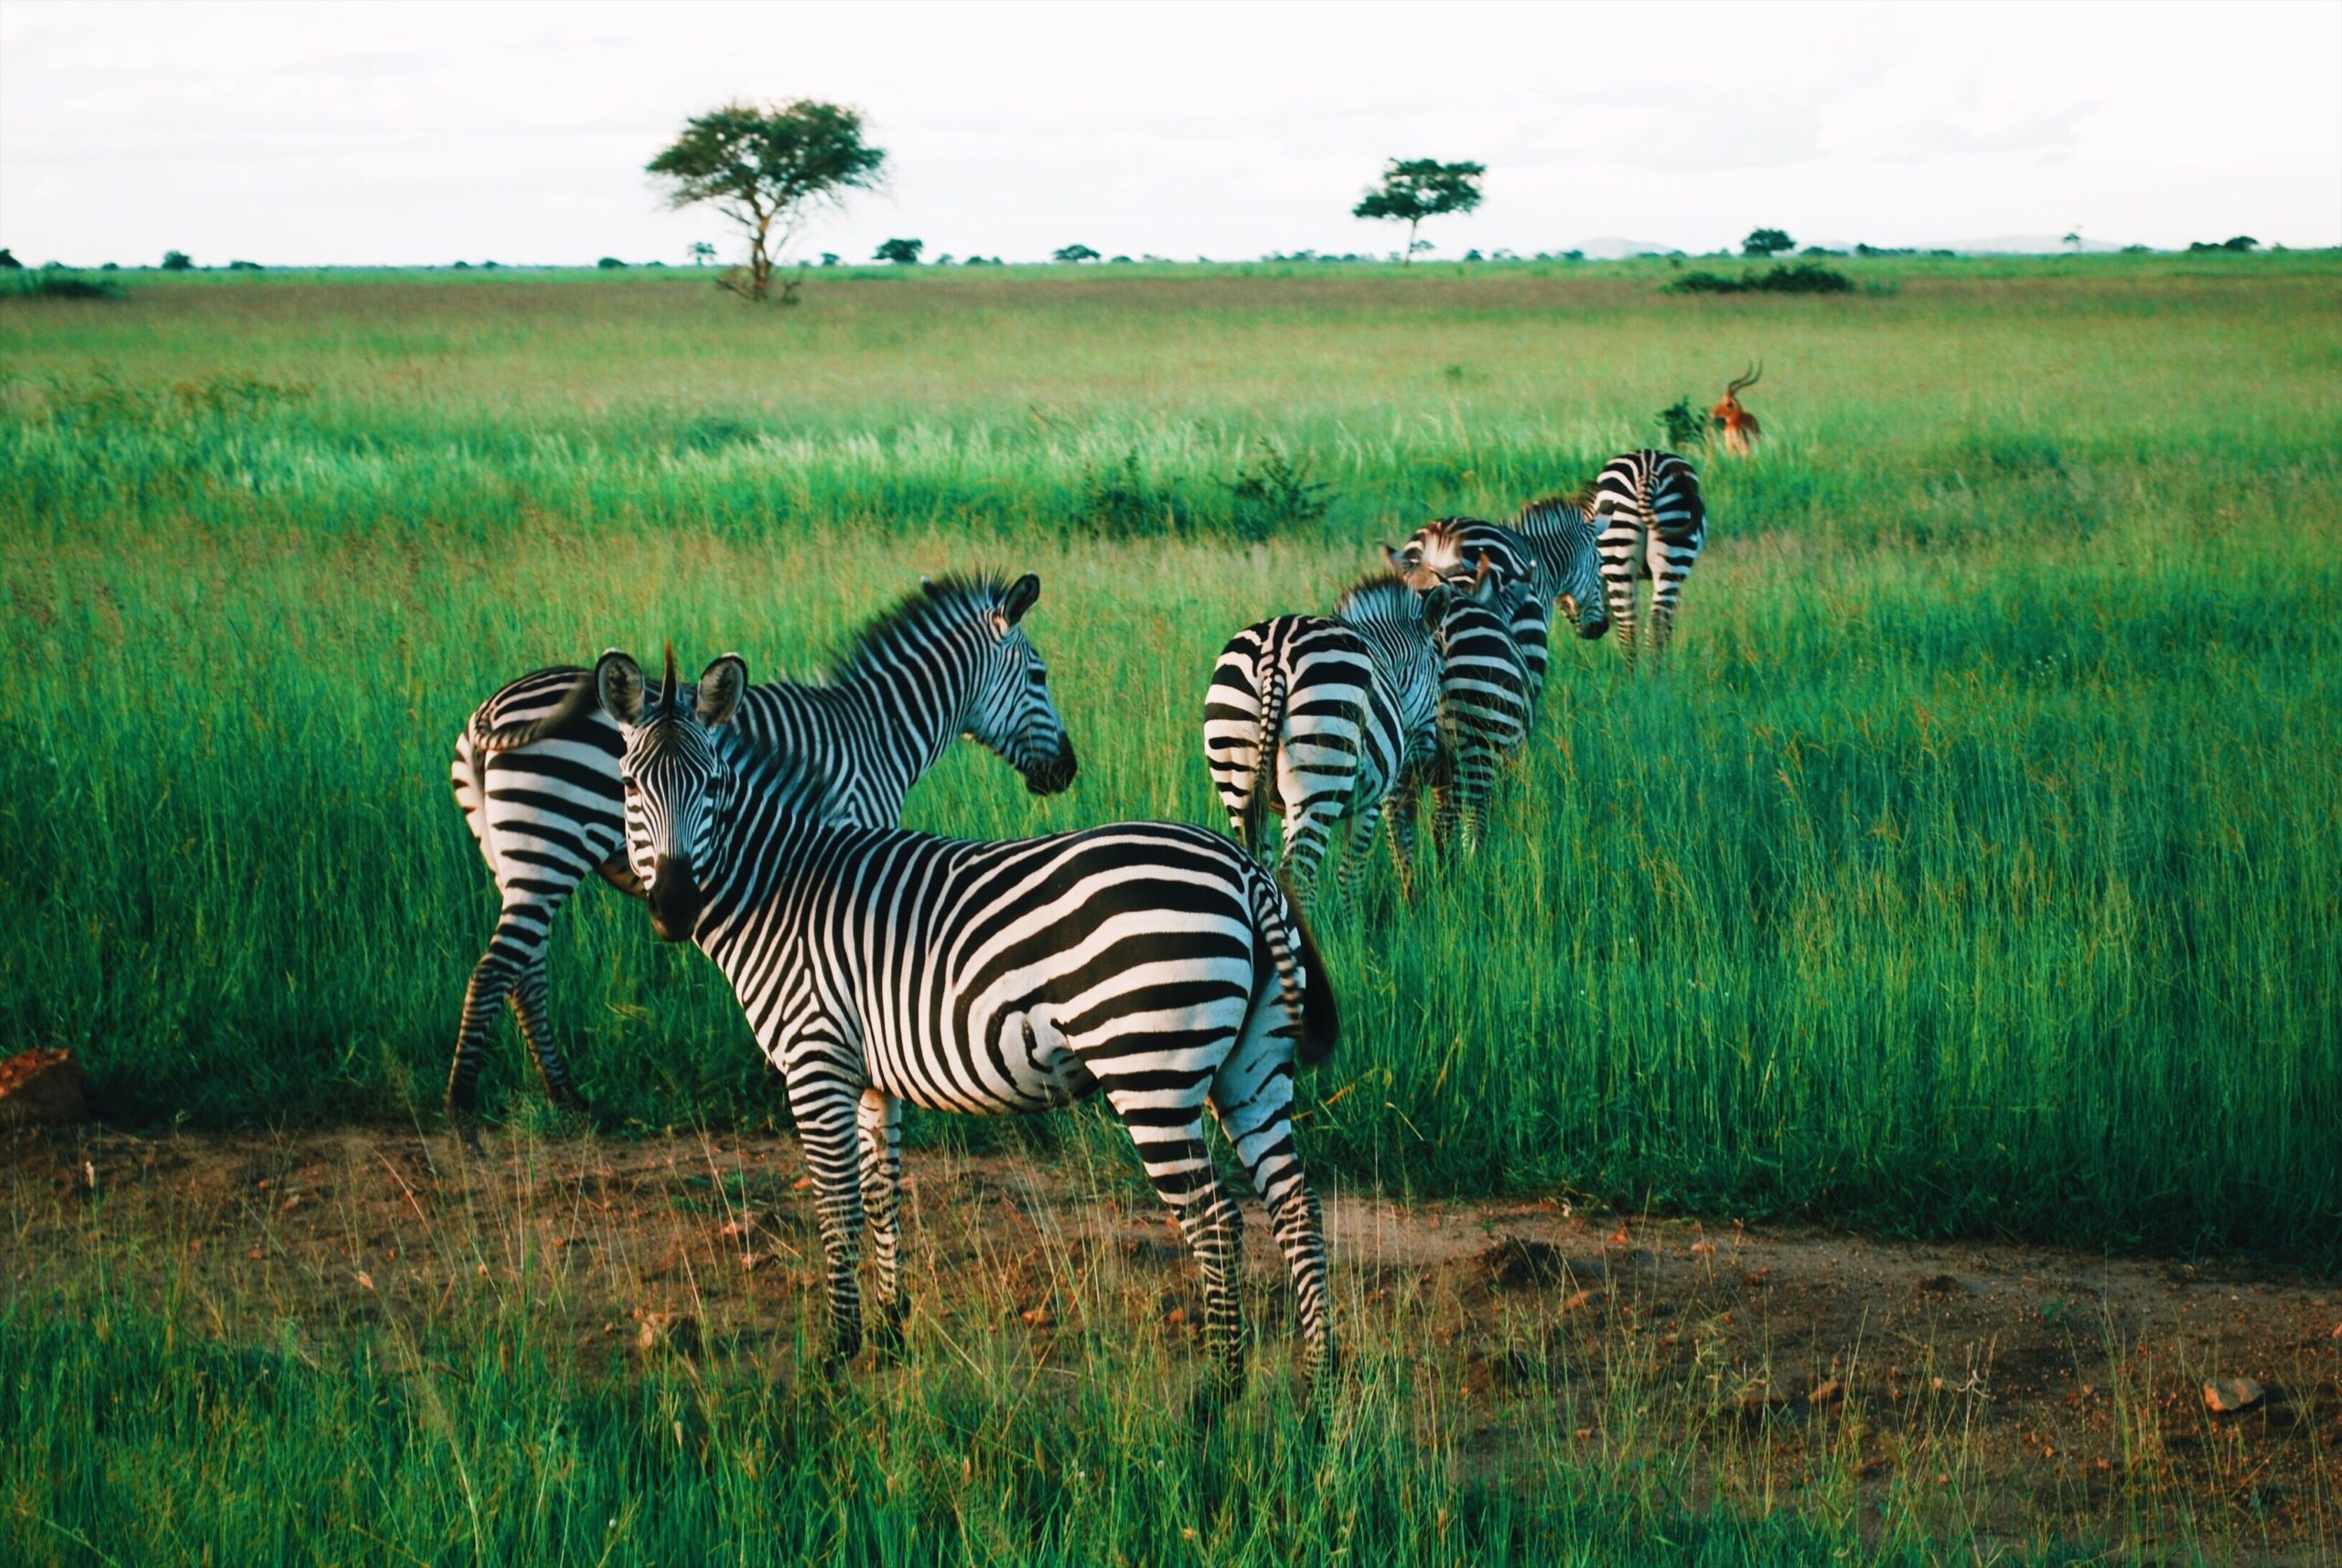 zebras standing in a field